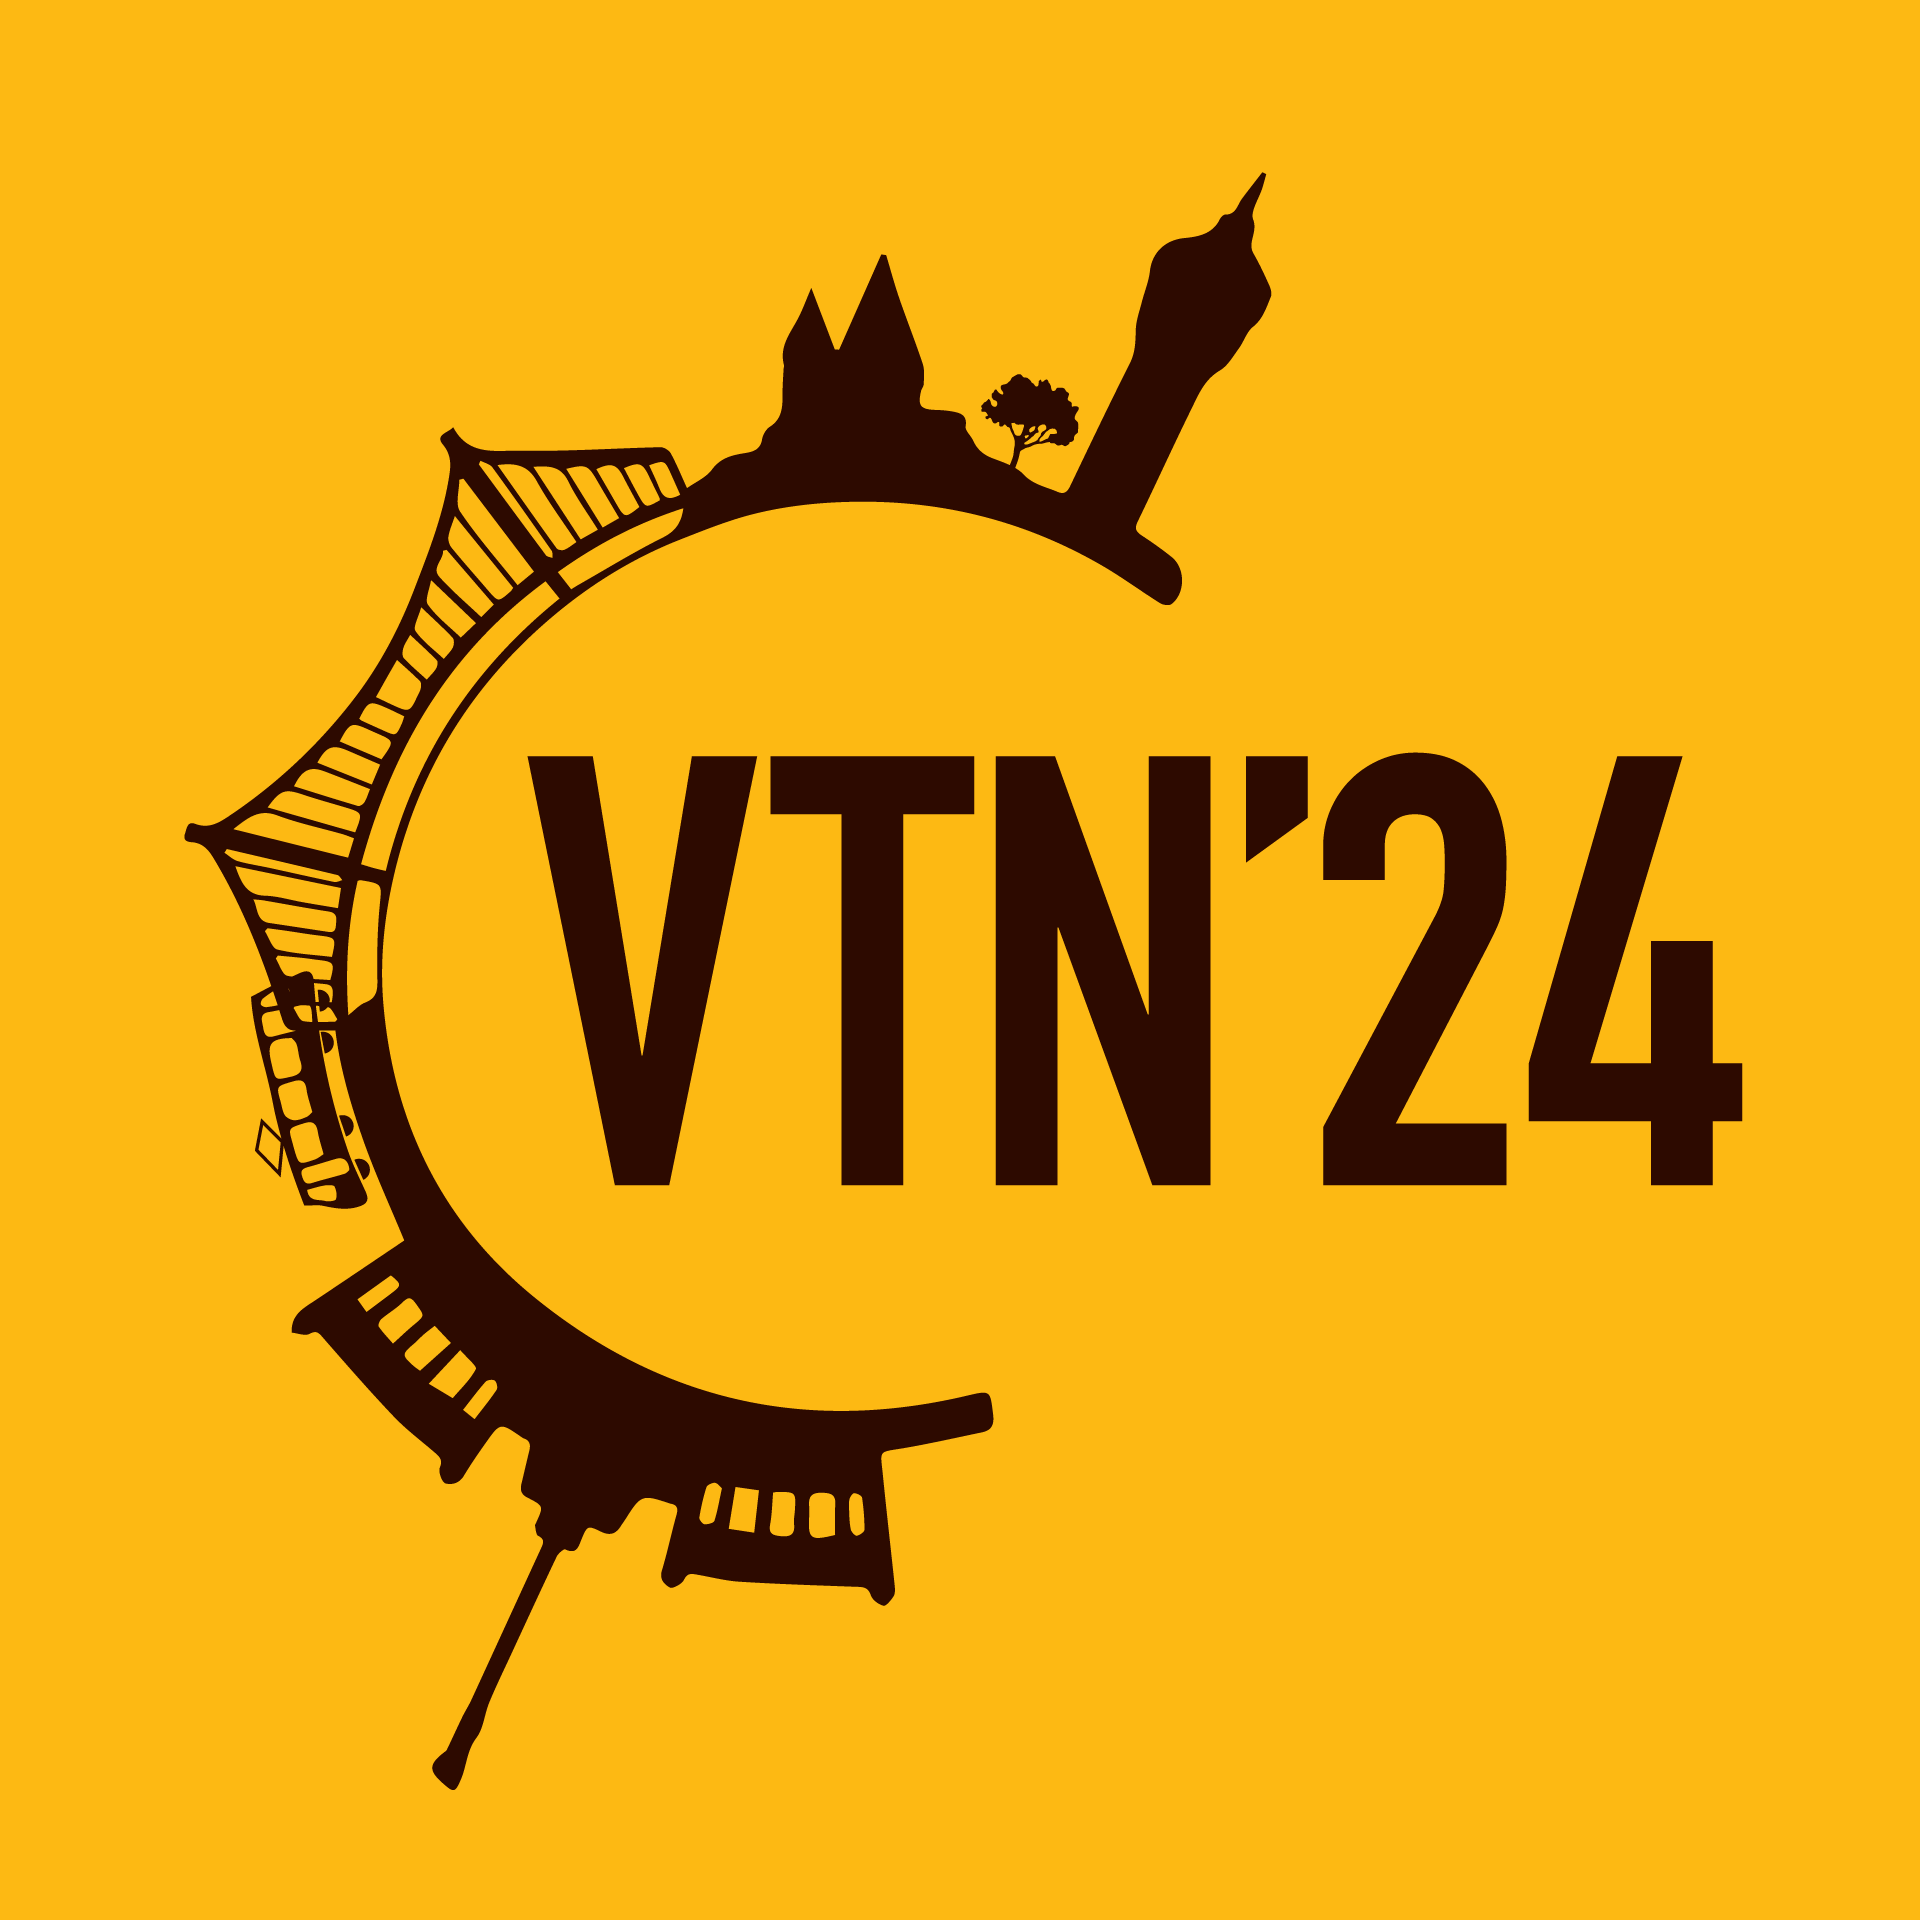 VTN'24